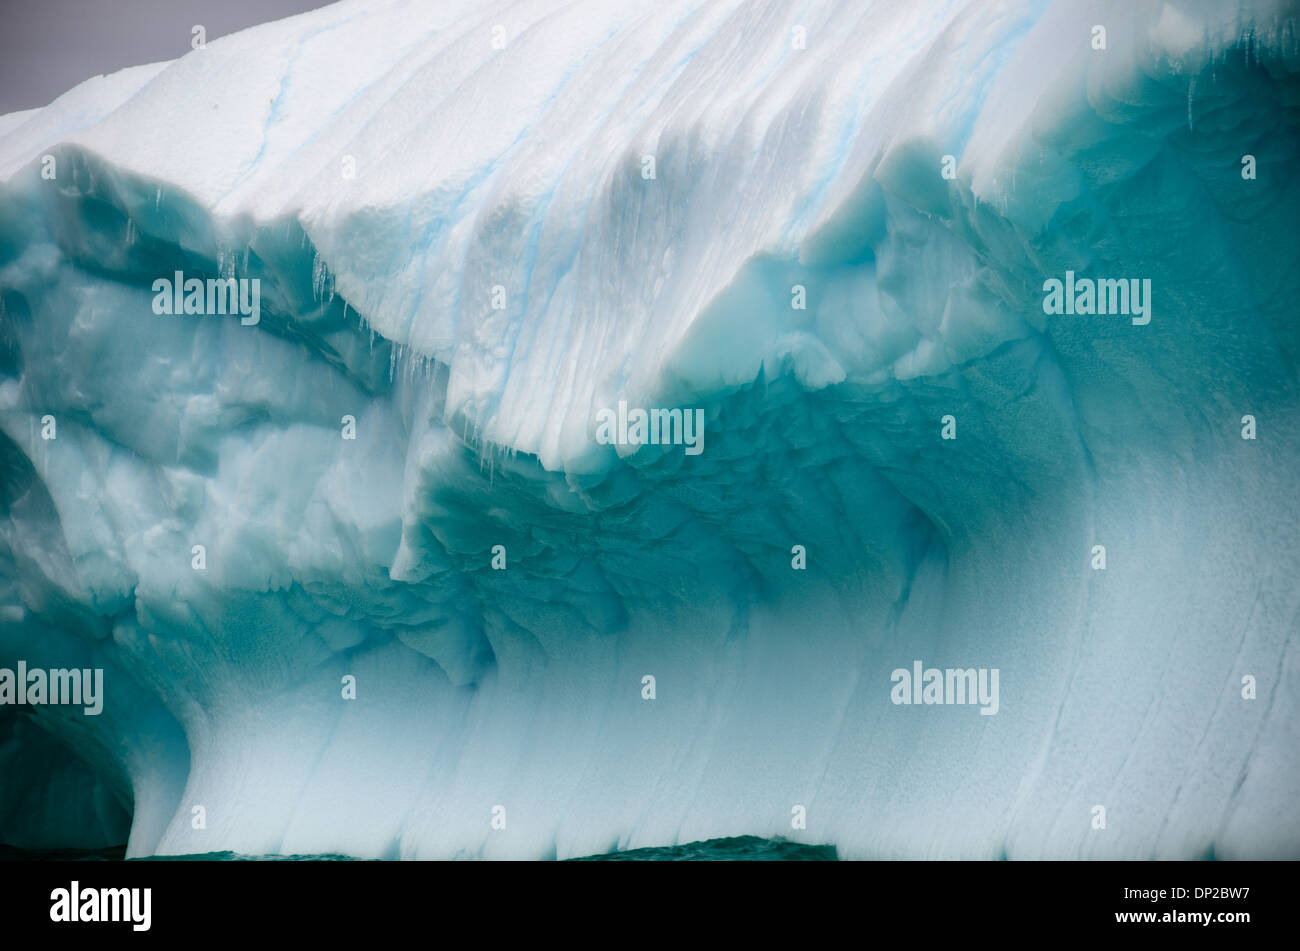 Antartide - forme intricate intagliato in un iceberg Antartico vicino a galleggiante due Hummock Isola, l'Antartide. Foto Stock